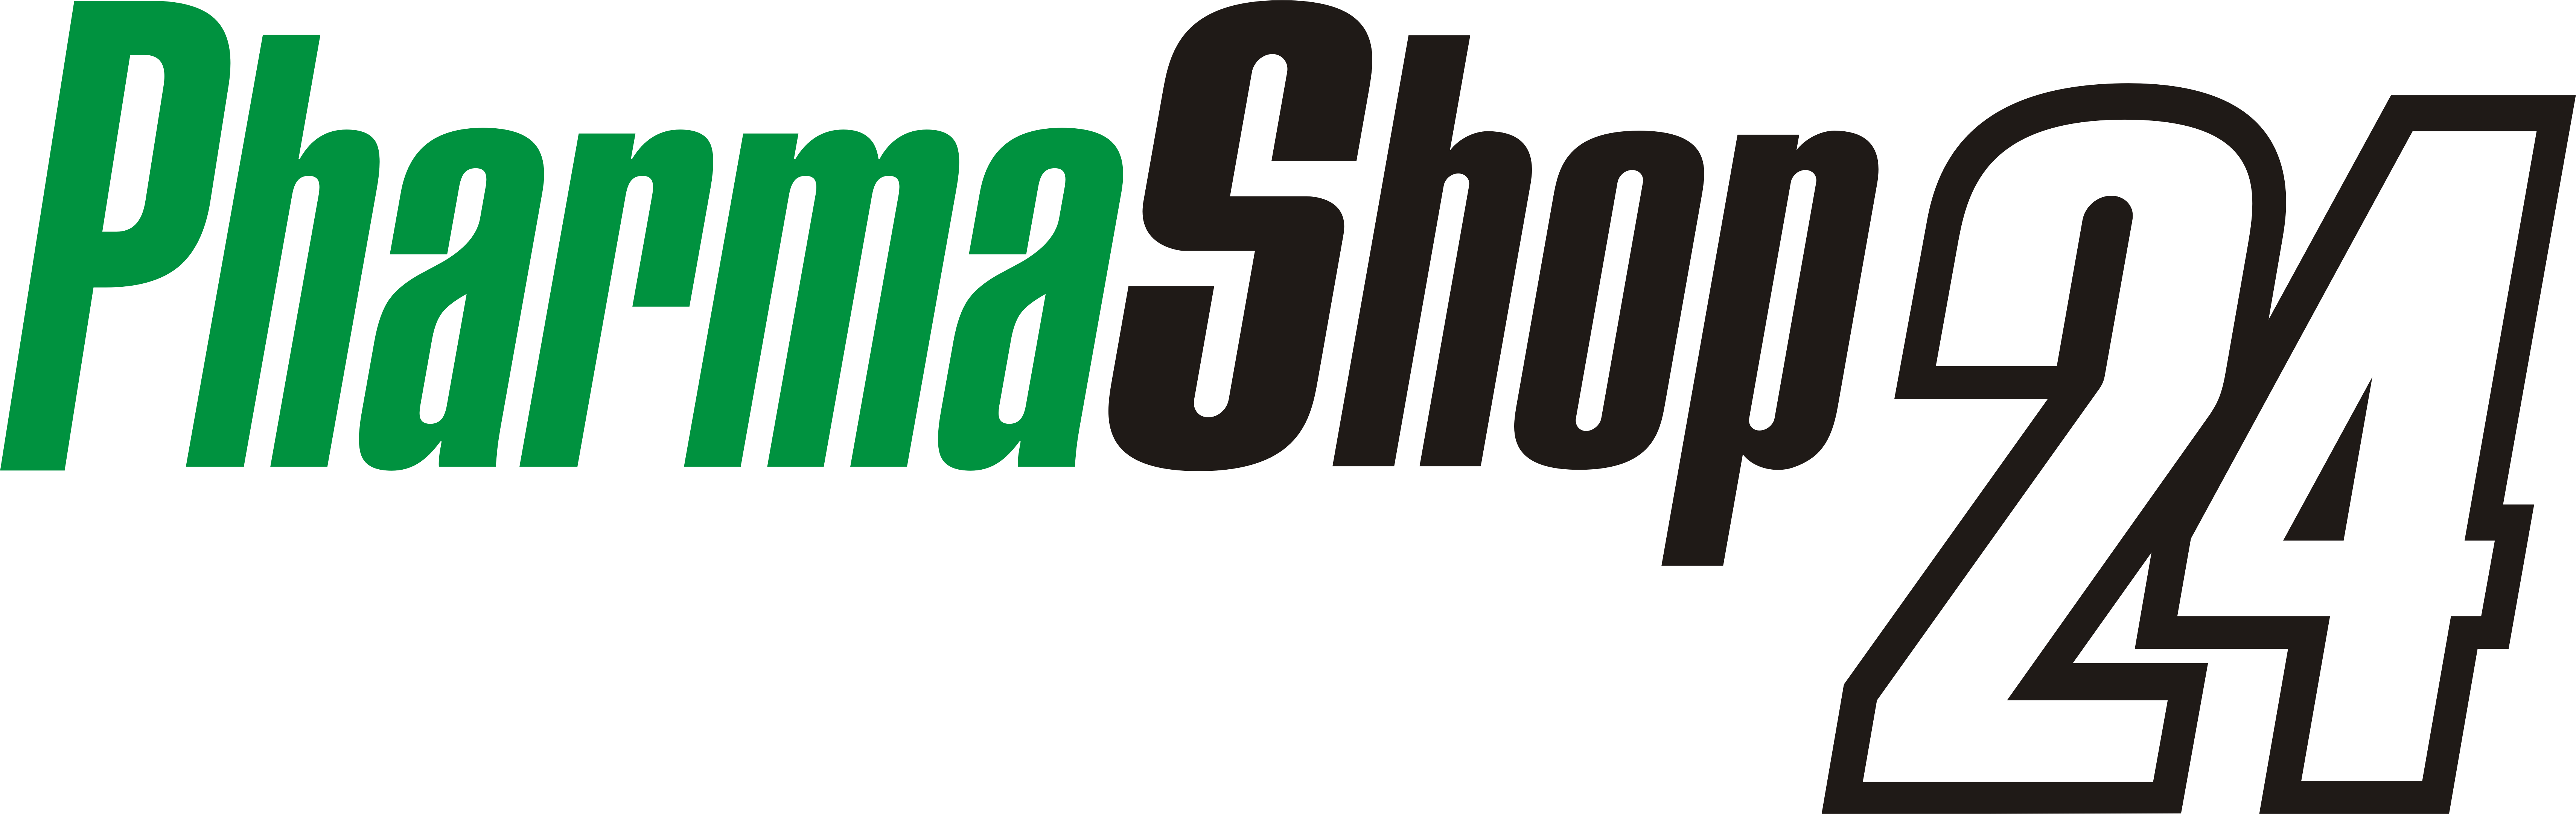 Logo Pharmashop